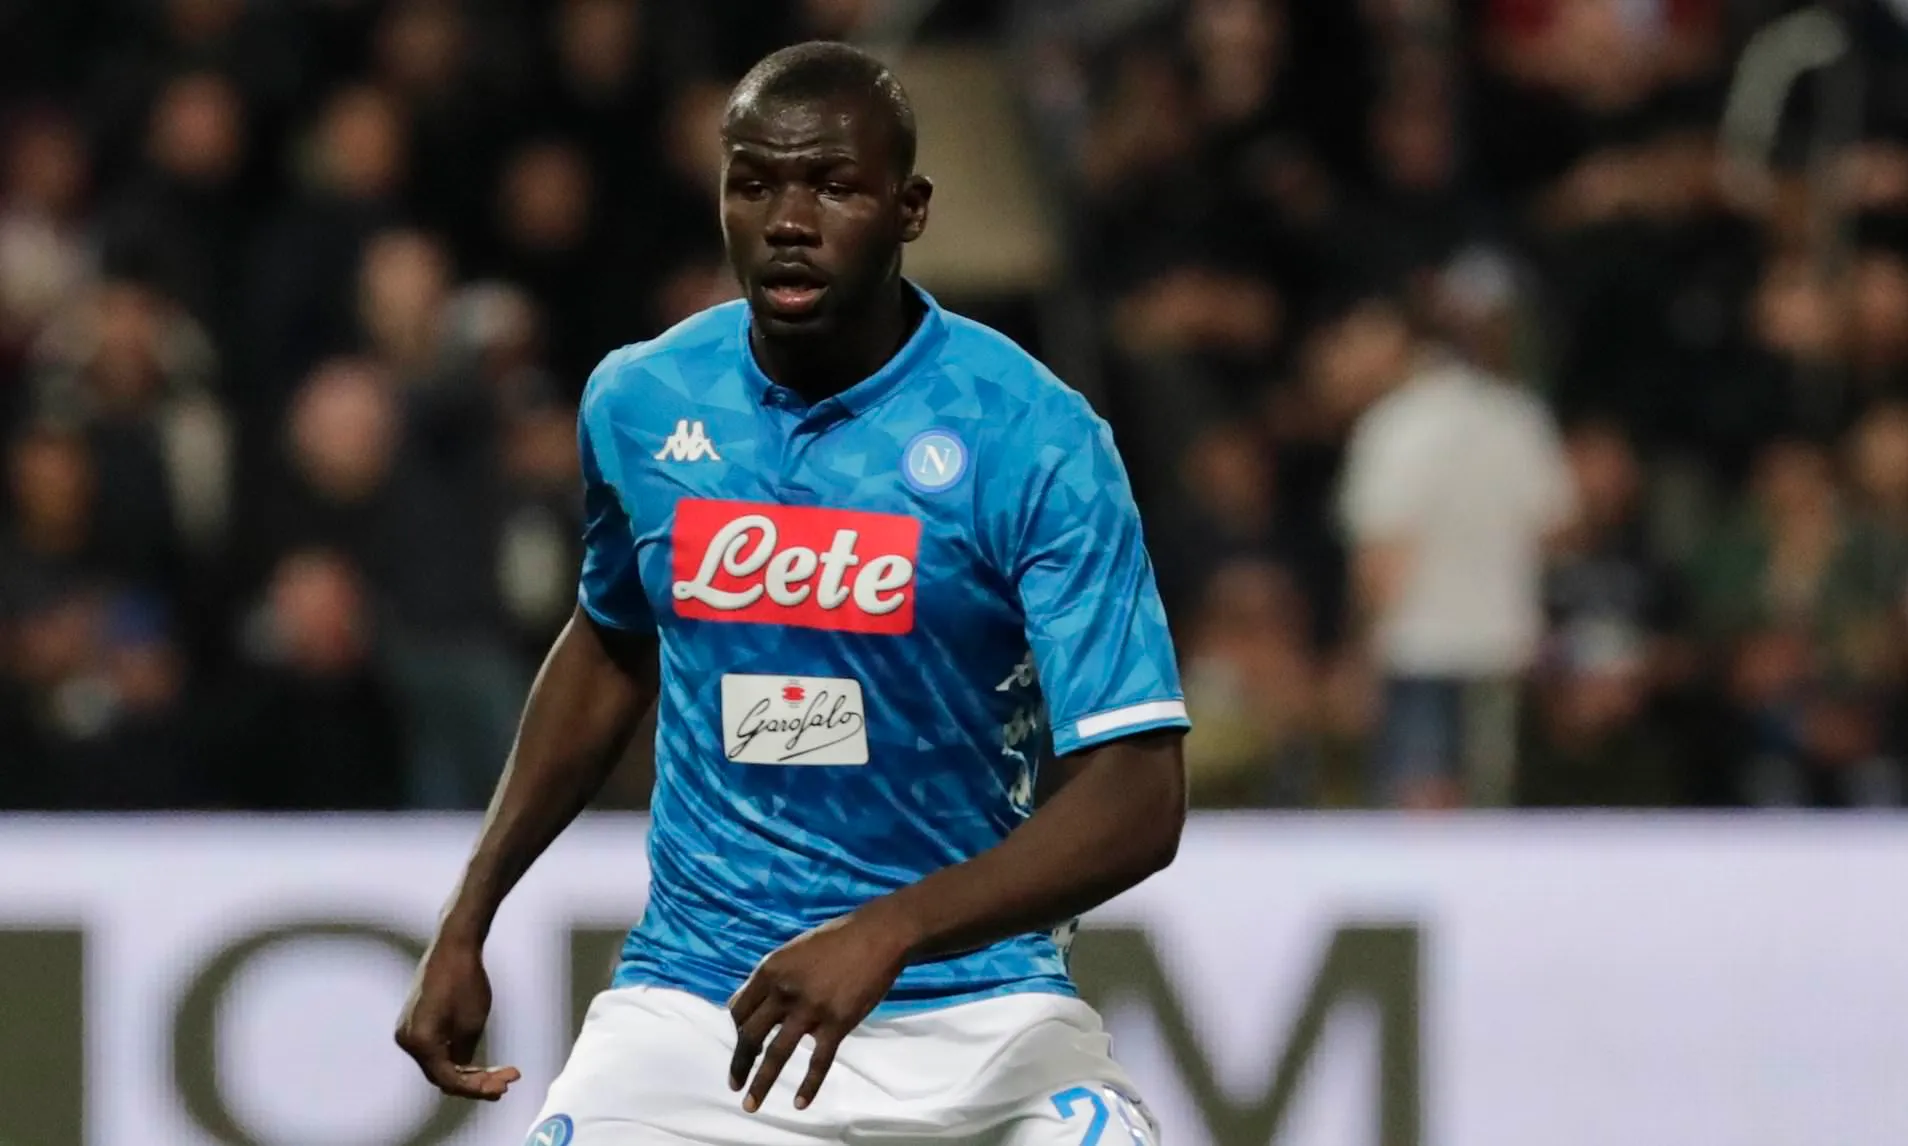 NÓNG! Napoli trả lời Man Utd, chốt giá bán Kalidou Koulibaly - Bóng Đá